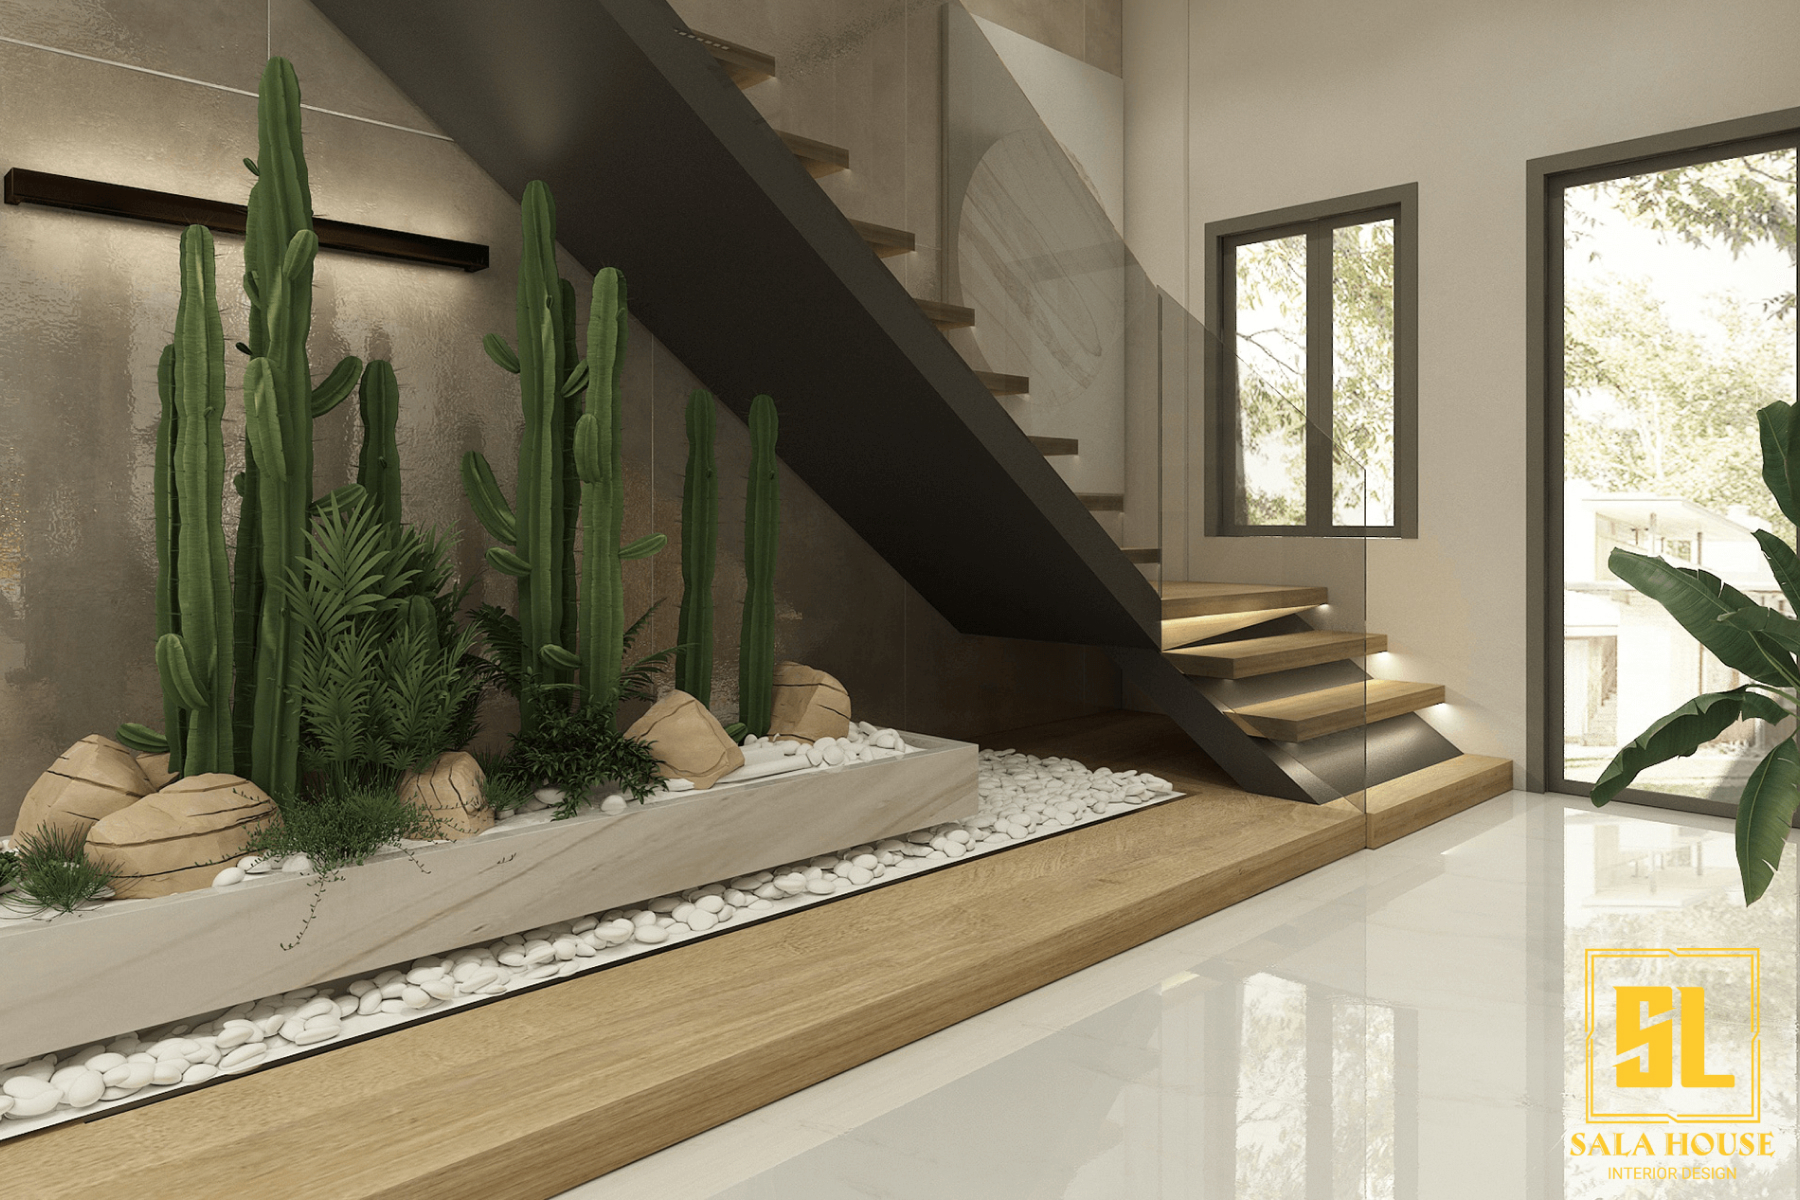 Sala House mách bạn những cách thiết kế gầm cầu thang ấn tượng